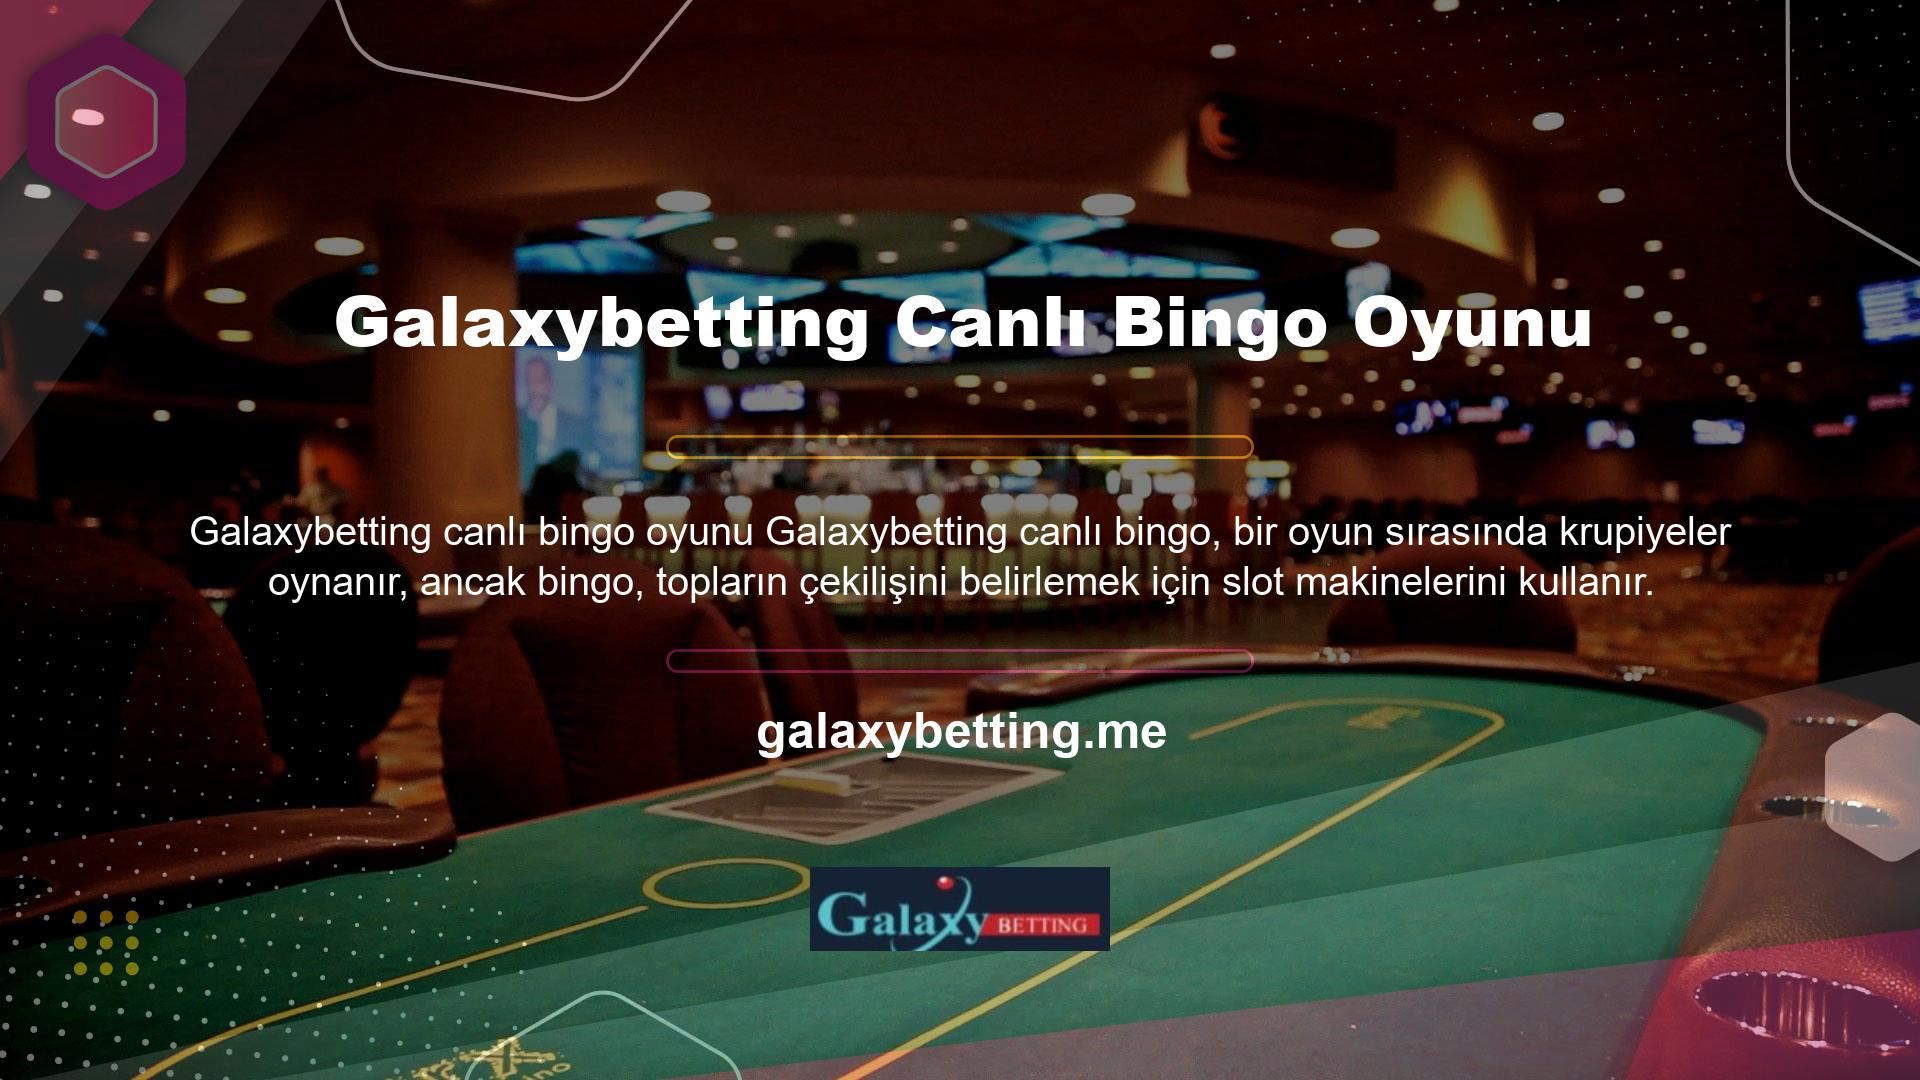 Bu amaçla canlı bahis sitesi, güvenilir üyeler için altyapısı olarak tanımlanan Galaxybetting Canlı Bingo Oyunları ile çalışmaktadır